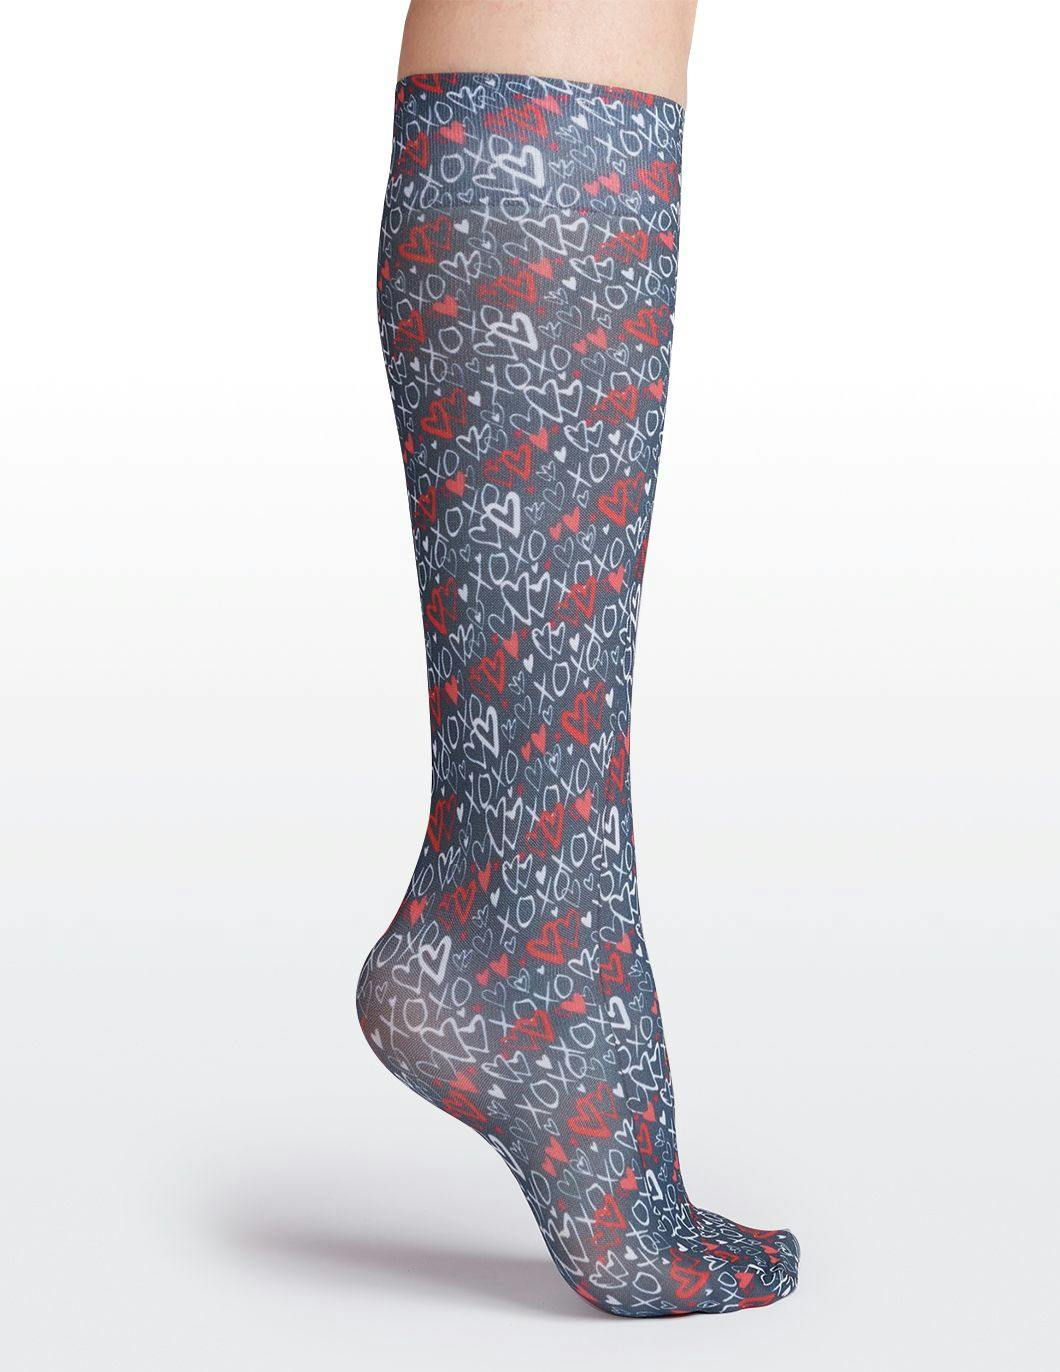 cutieful-compression-socks-8-15-mmhg-red-hearts-print